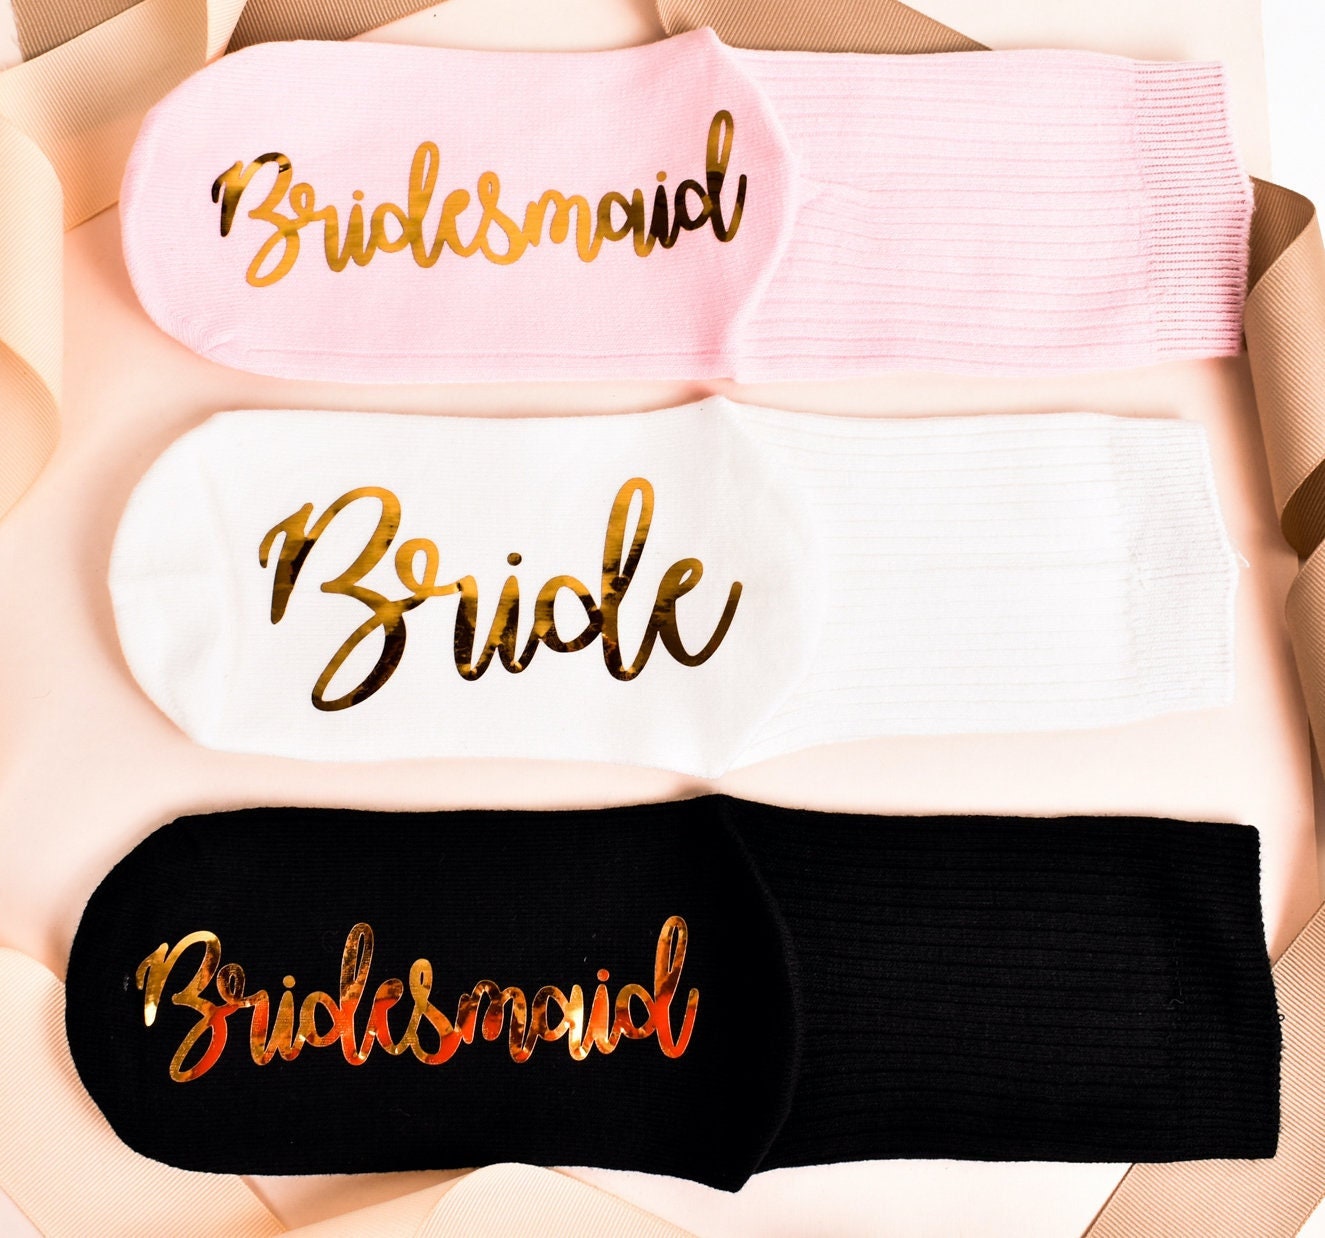 Bridesmaid Socks, Proposal Socks, Custom Socks, Bridesmaid Proposal Gift, Grip Socks, Wedding Party Socks, Bridal Party Socks, Wedding Socks